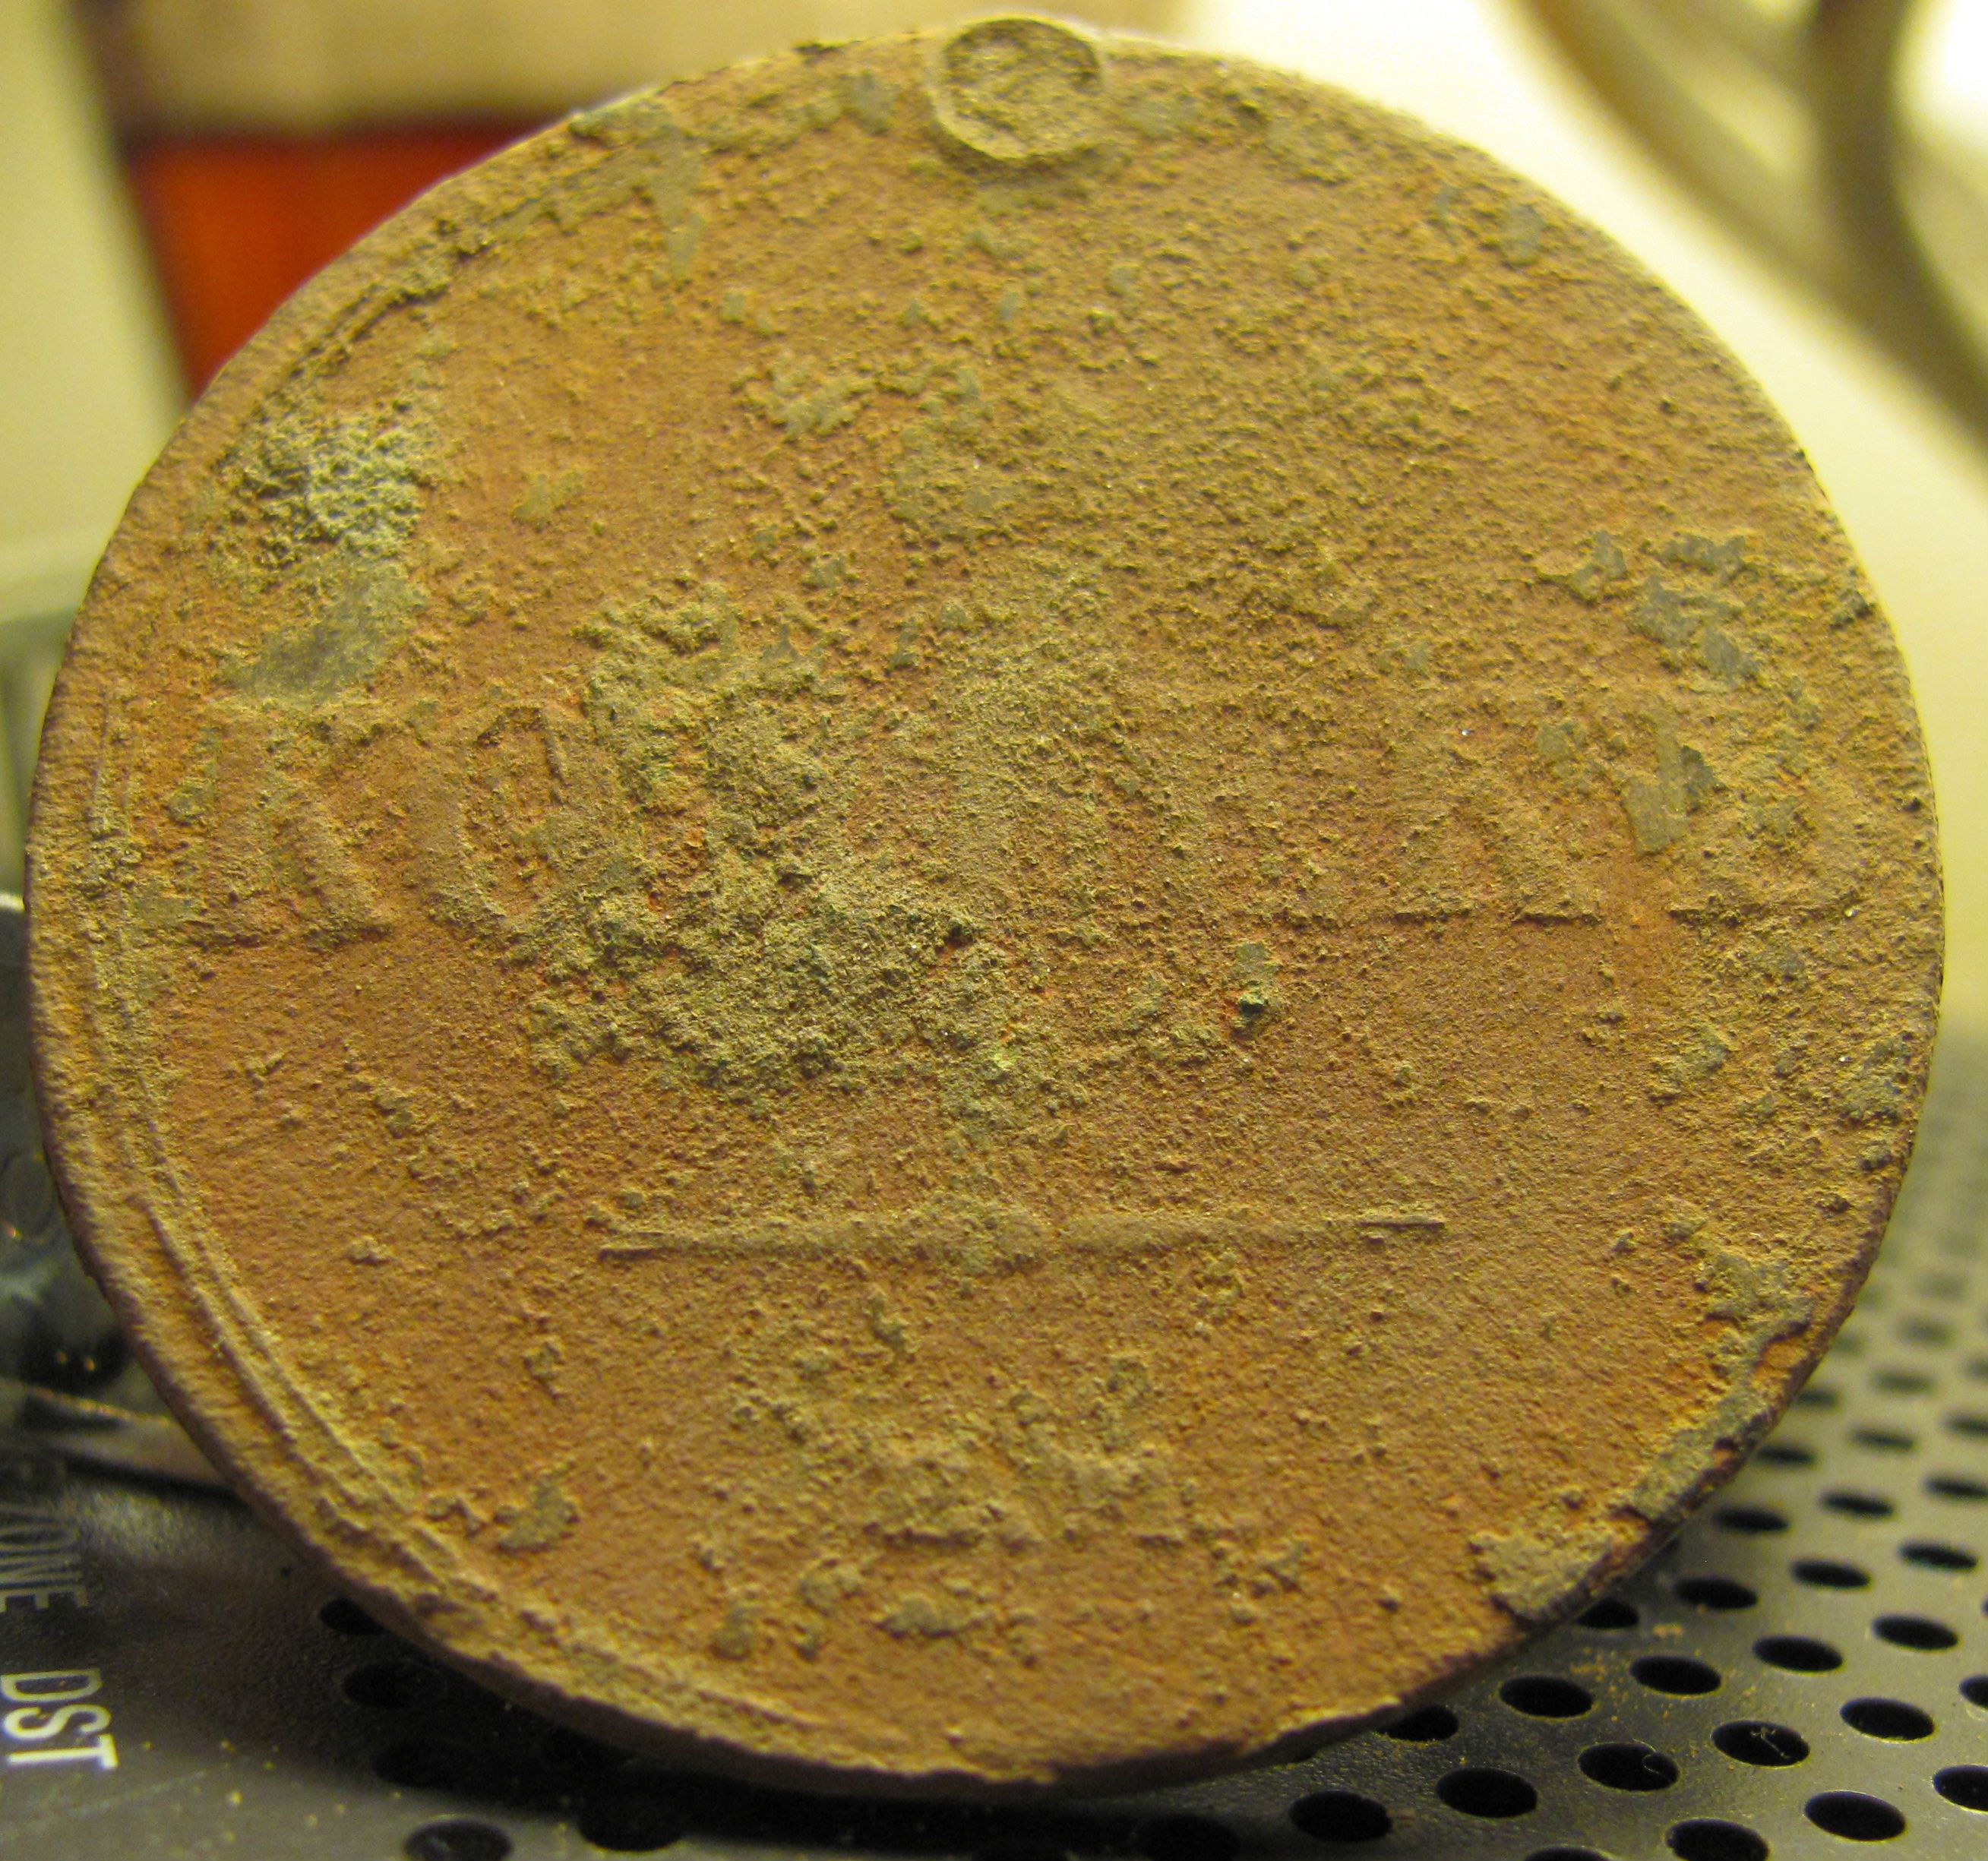 1836 Russian kopek coin. Oct.2012